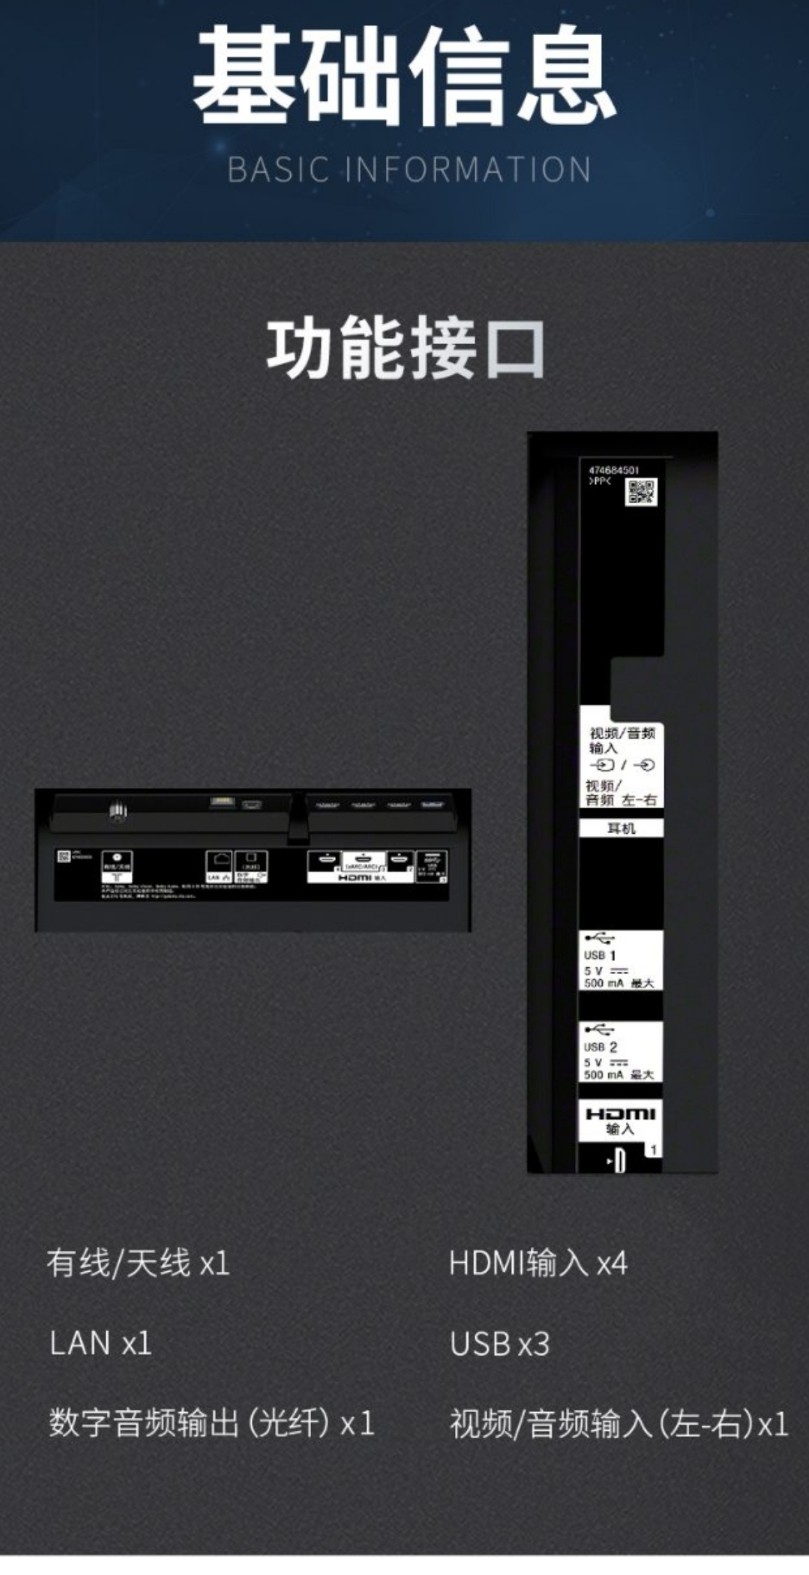 【绿地数码】索尼kd-75x9500g 75英寸 4k hdr 安卓智能液晶电视 黑色